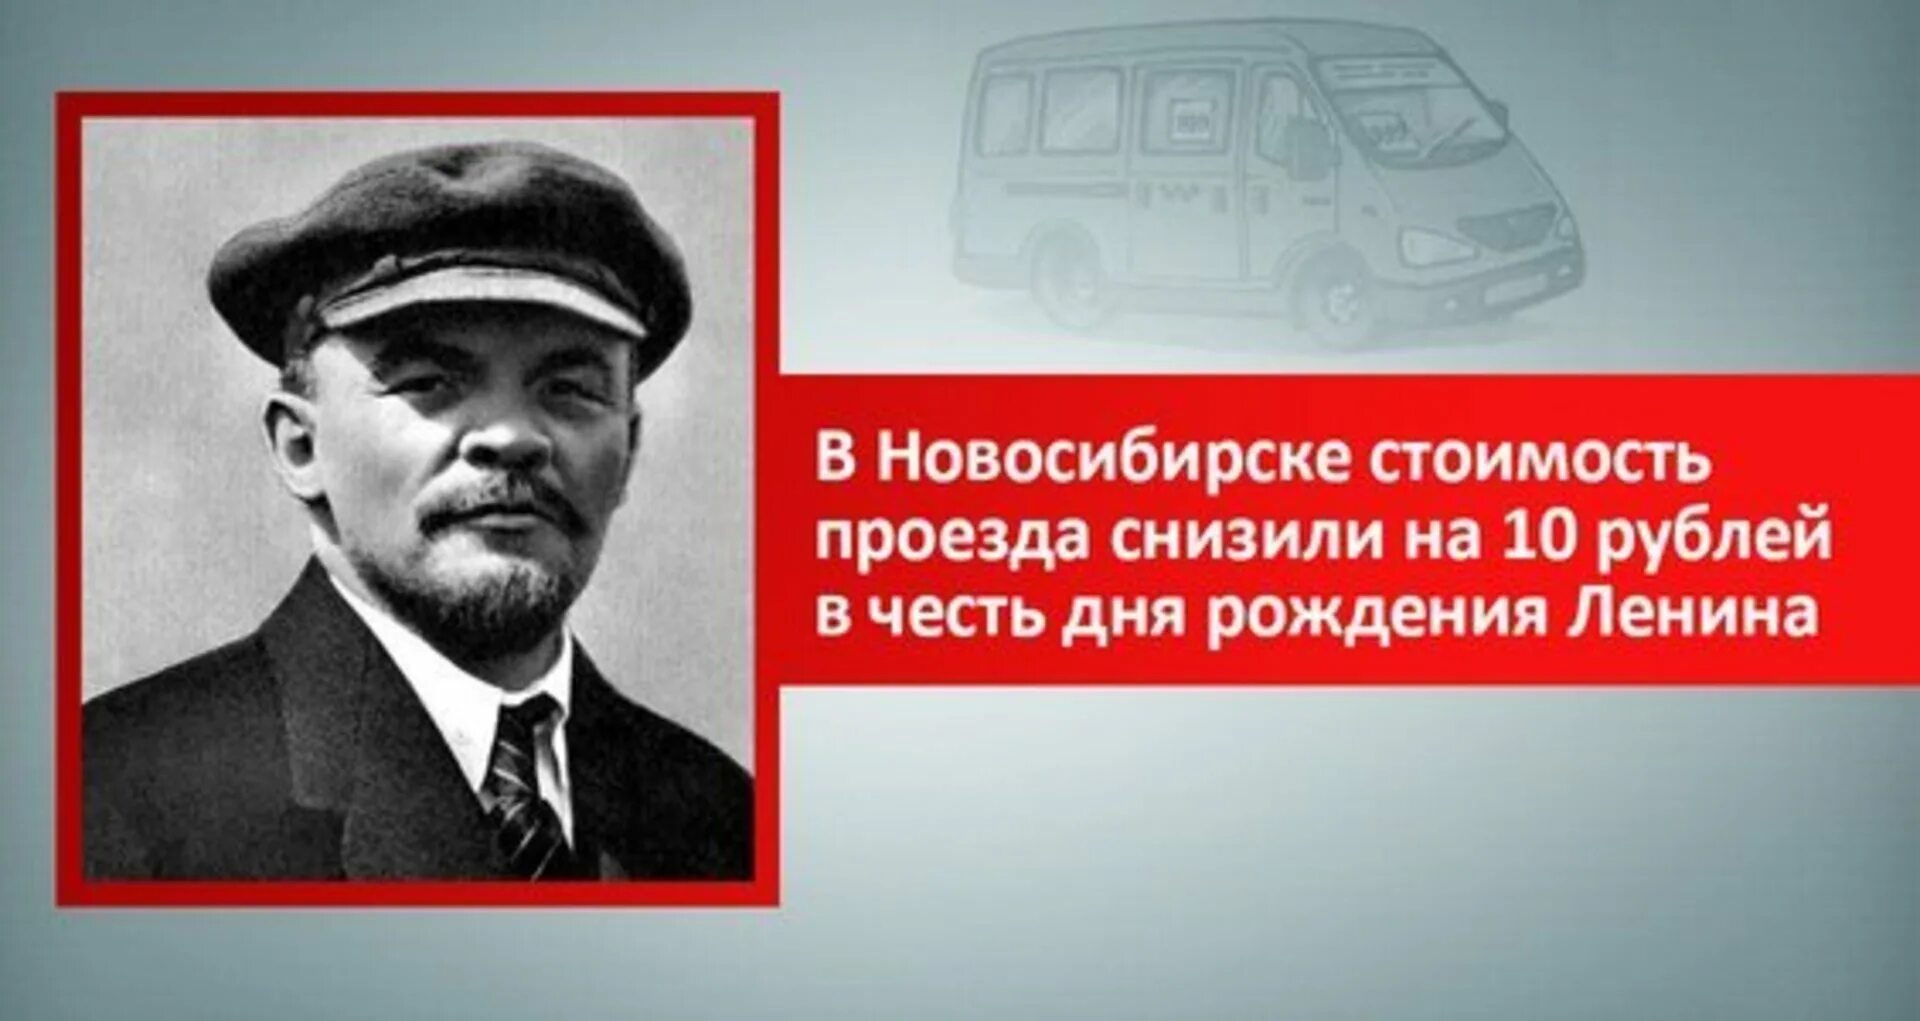 День рождения ленина и сталина. 22 Апреля день рождения Ленина. 22 Апреля день рождения Ленина и Гитлера. День рождения Ильича.